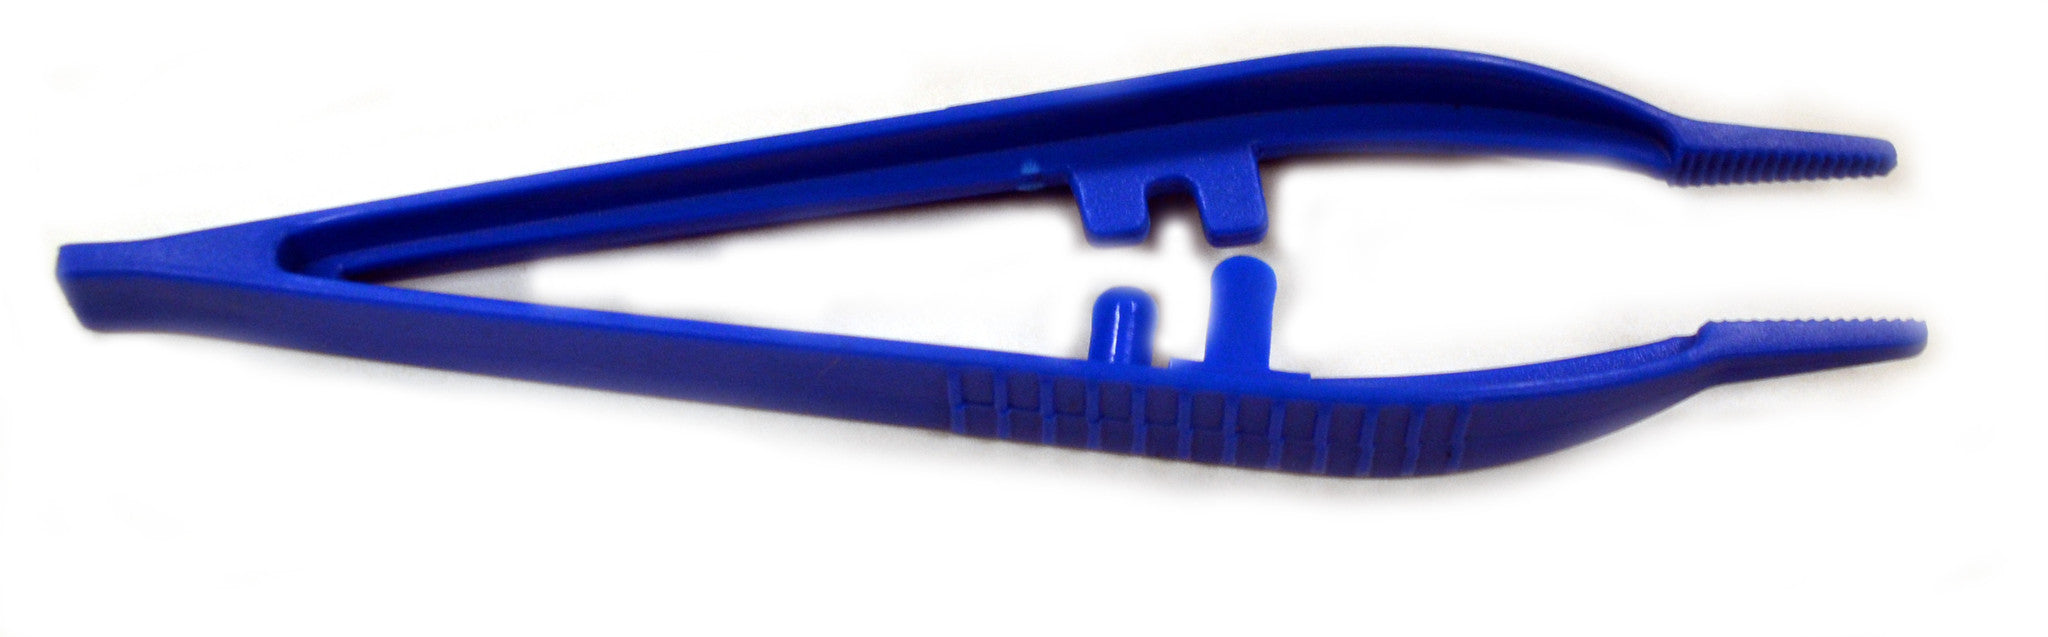 Plastic Forceps (Tweezers), 5in. , Pack of 10 — hBARSCI